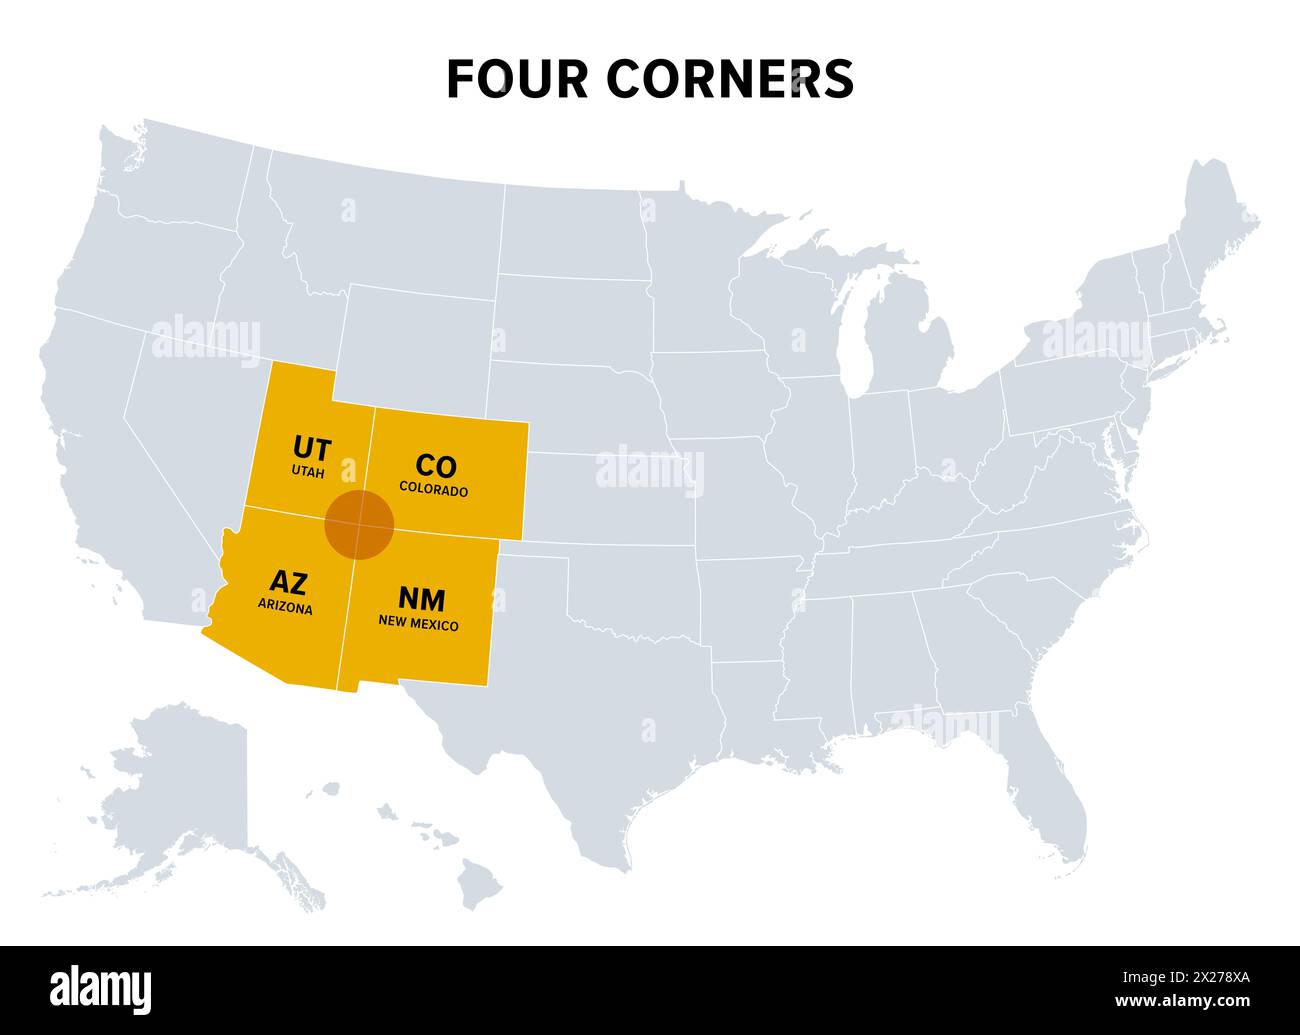 Four Corners, una regione degli Stati Uniti sudoccidentali, mappa politica. Solo regione negli Stati Uniti dove quattro stati condividono un punto di confine. Foto Stock